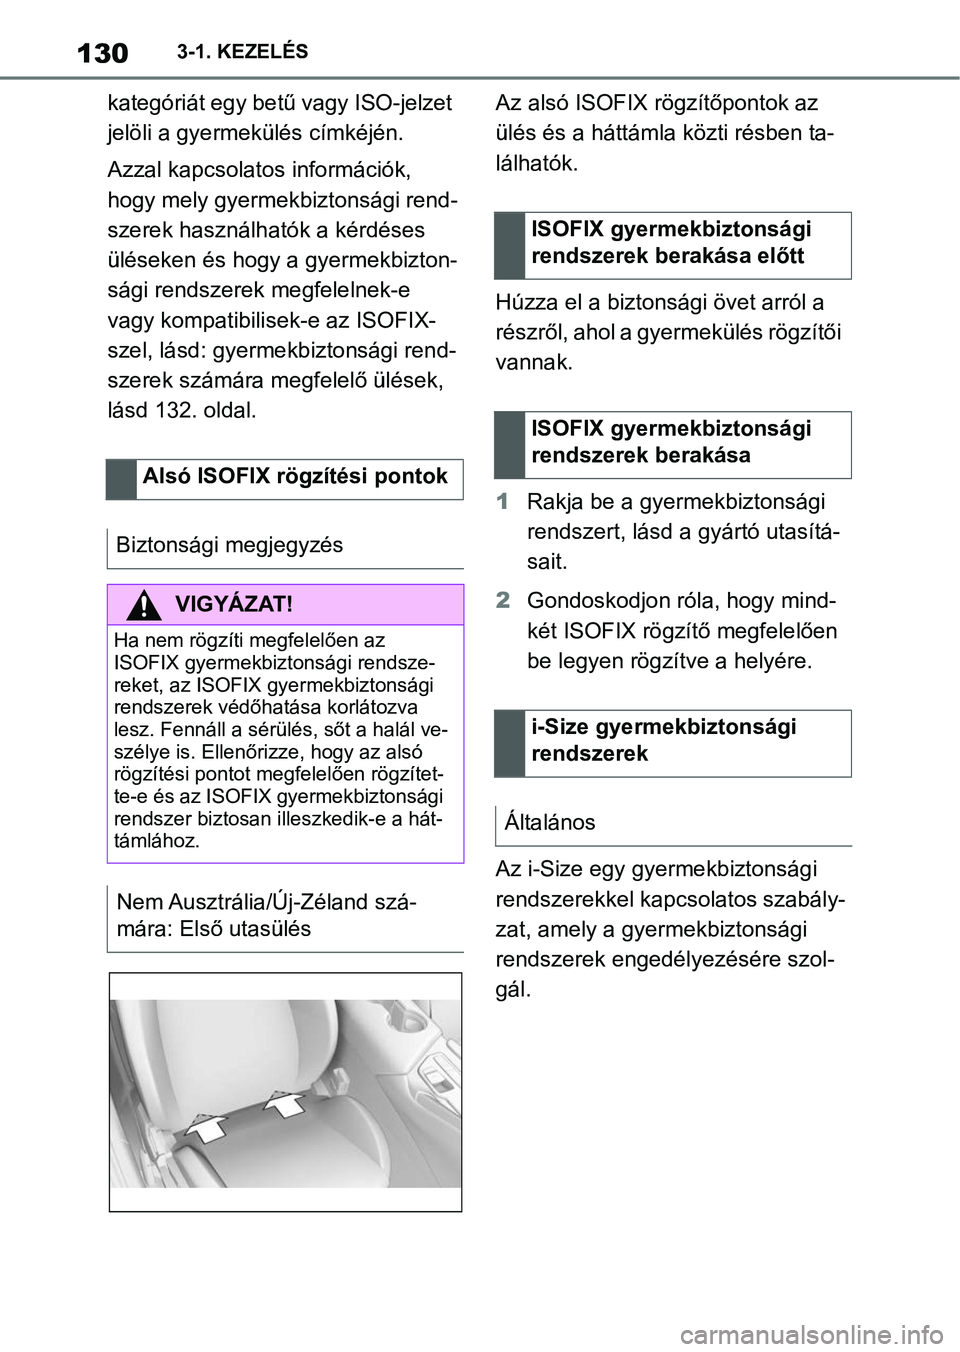 TOYOTA SUPRA 2020  Kezelési útmutató (in Hungarian) 1303-1. KEZELÉS
kategóriát egy betű vagy ISO-jelzet 
jelöli a gyermekülés címkéjén.
Azzal kapcsolatos információk, 
hogy mely gyermekbiztonsági rend-
szerek használhatók a kérdéses 
�